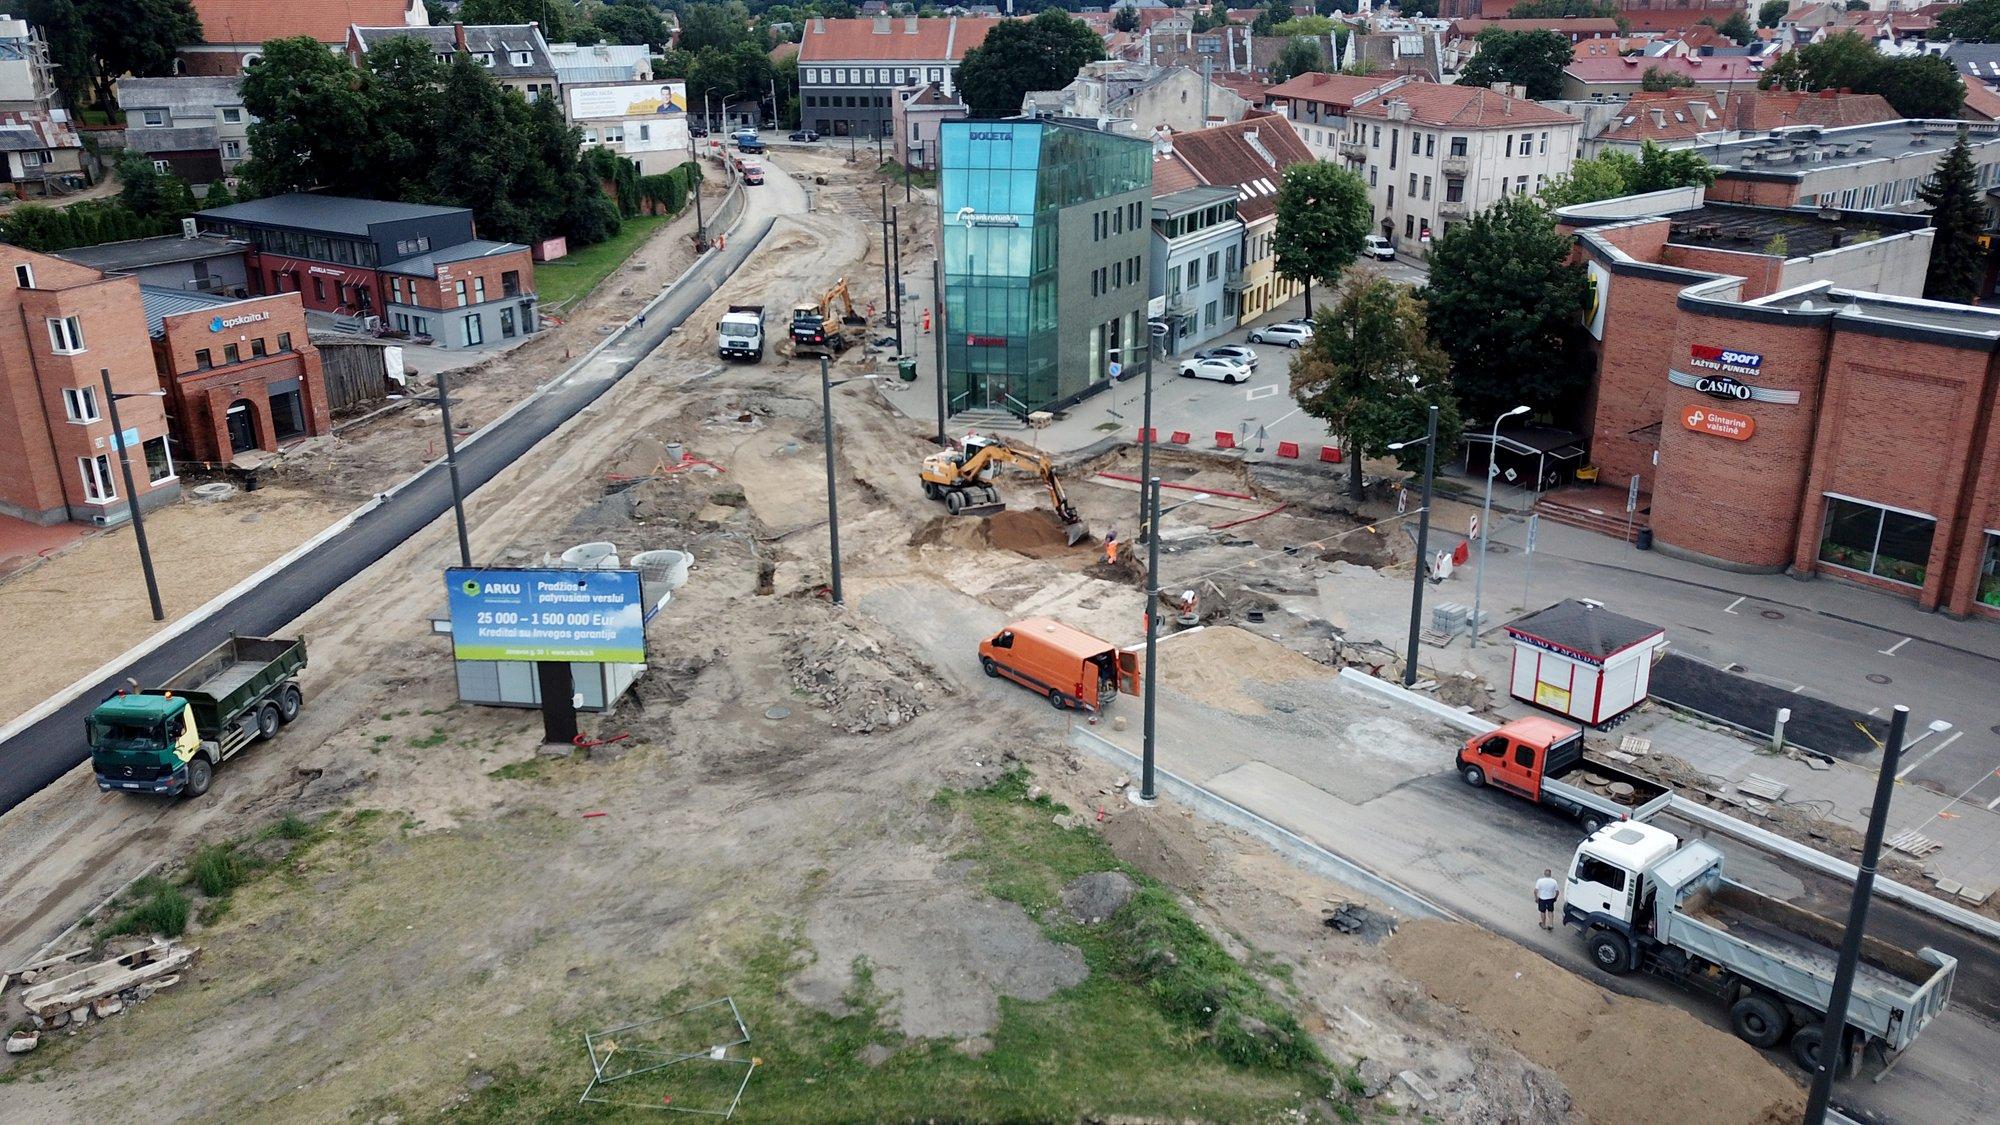 Daugiausia mokesčių sumokančios įmonės Lietuvoje: statybų sektoriuje – neregėtas šuolis